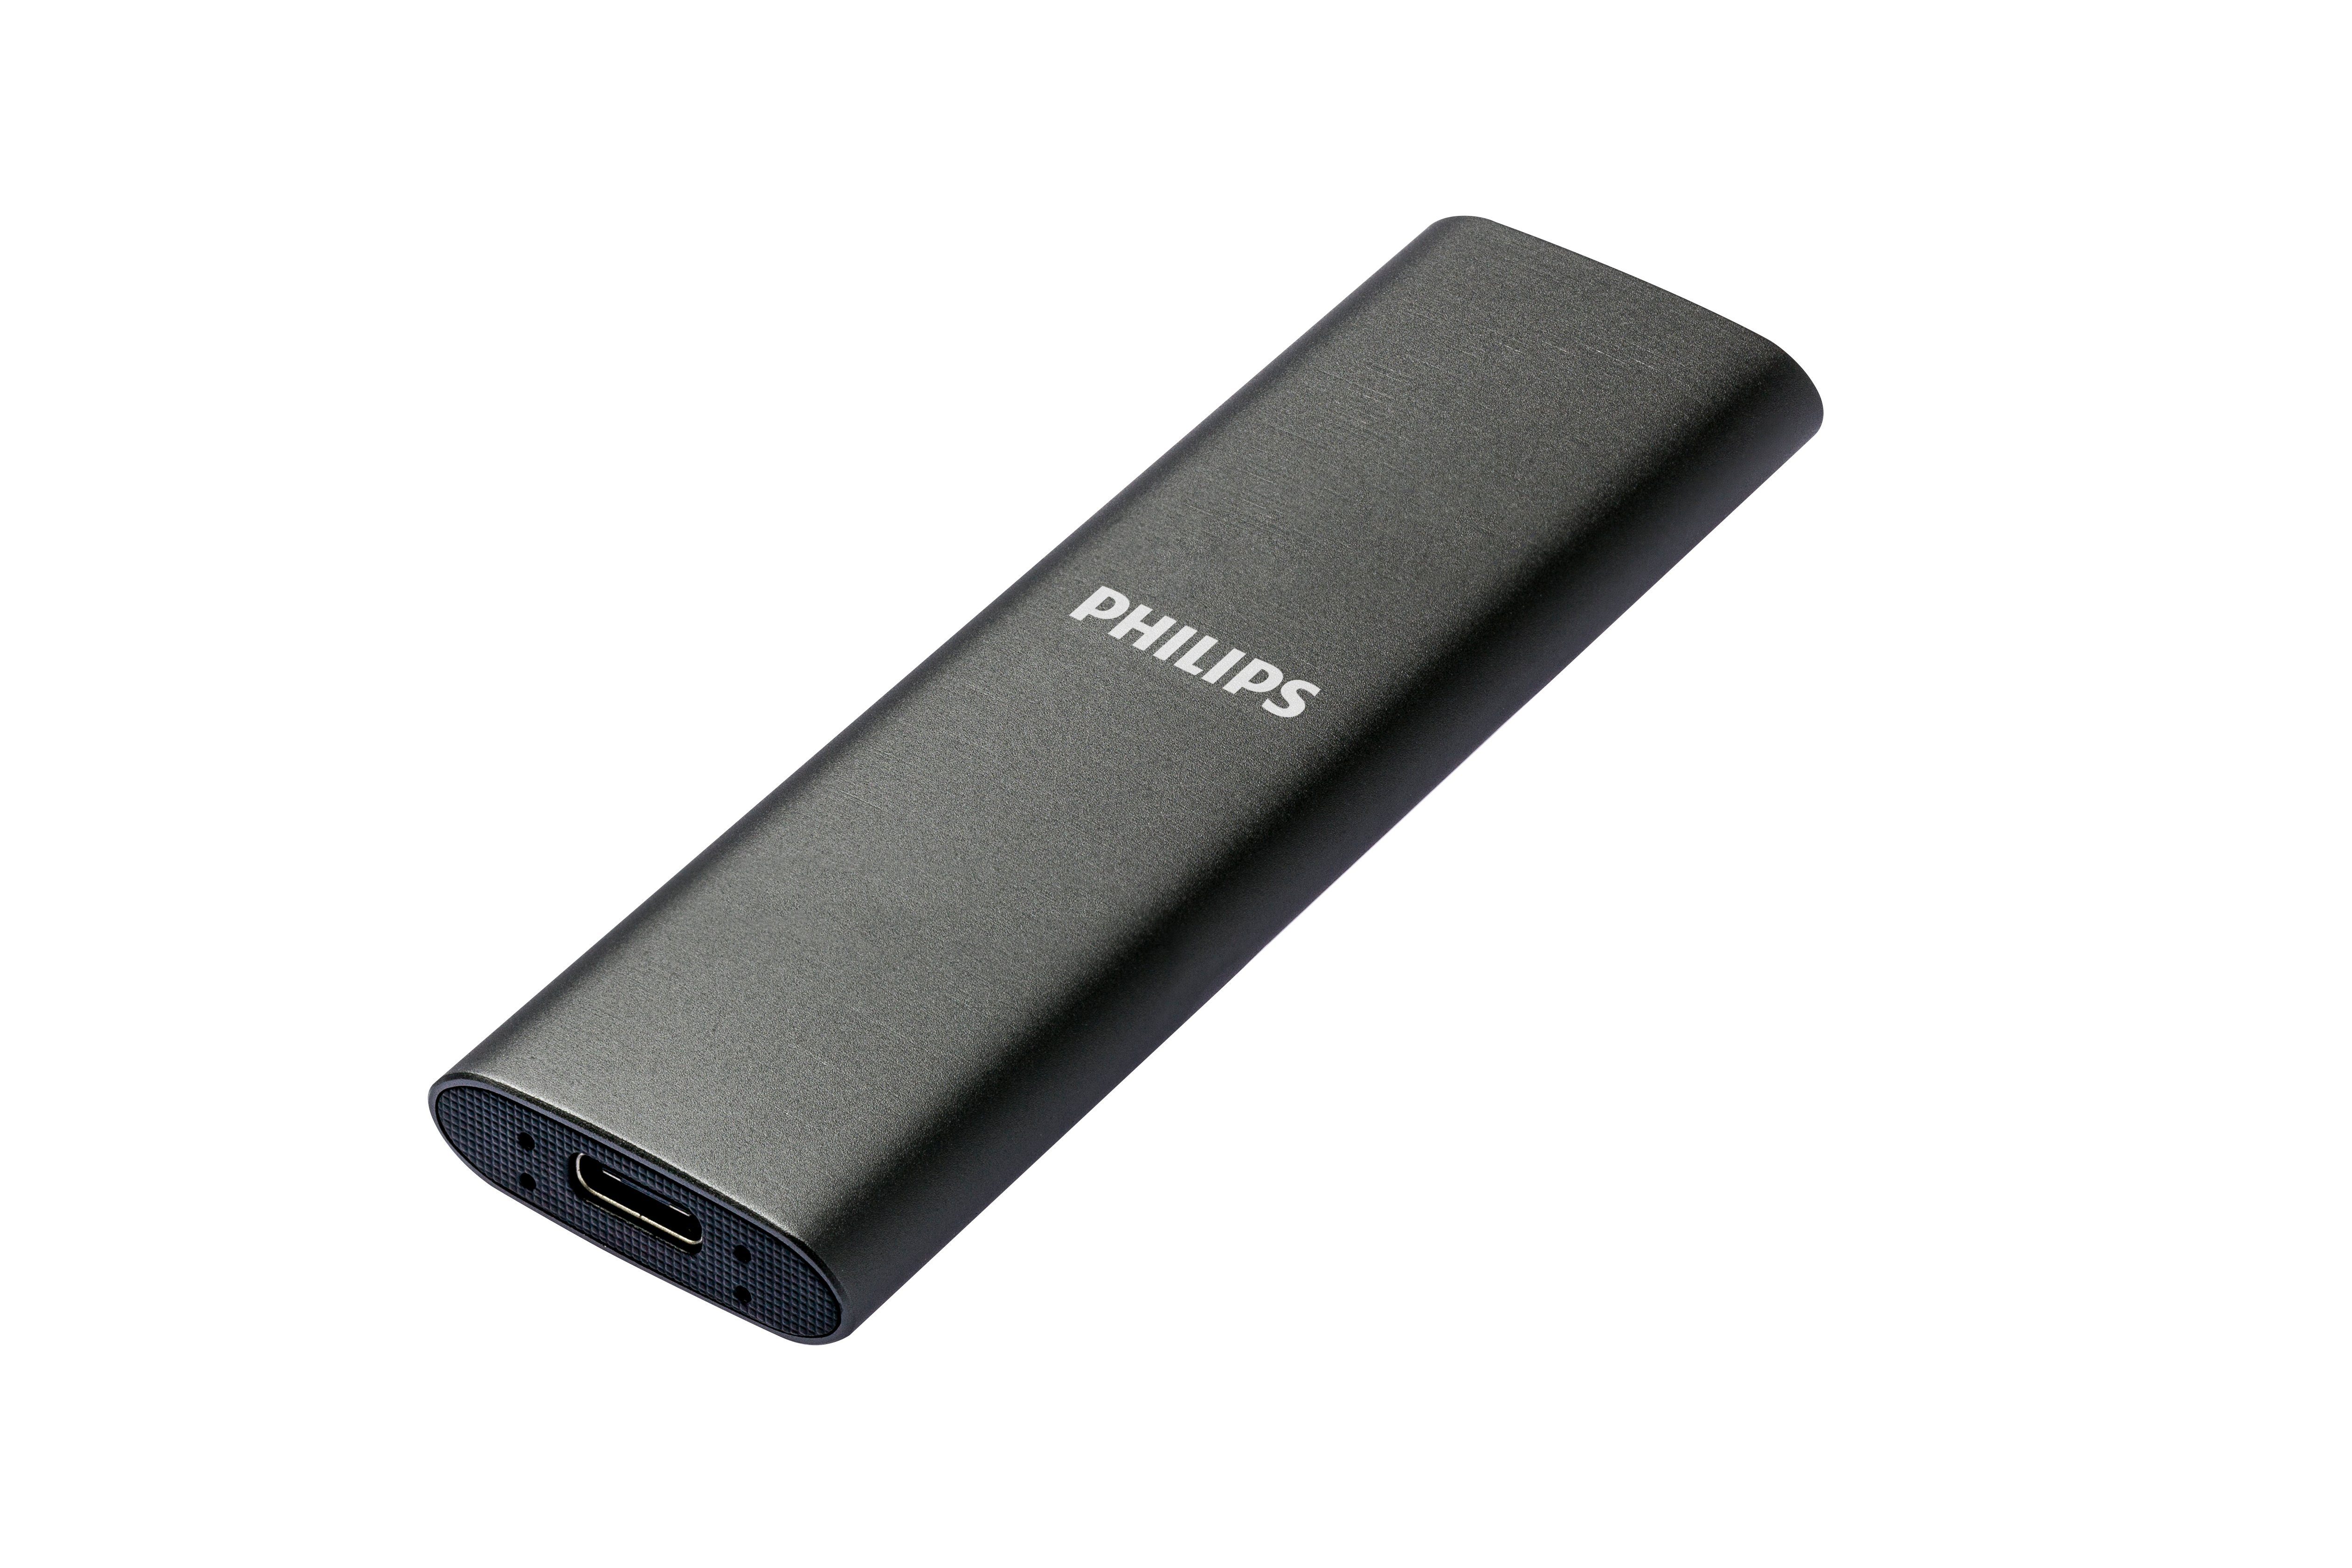 FM01SS030P/00 Speed 540 SSD SATA" Philips Space 3.2, Lesegeschwindigkeit, externe Schreibgeschwindigkeit,Ultra MB/S (1TB) Grey 520 MB/S USB-C